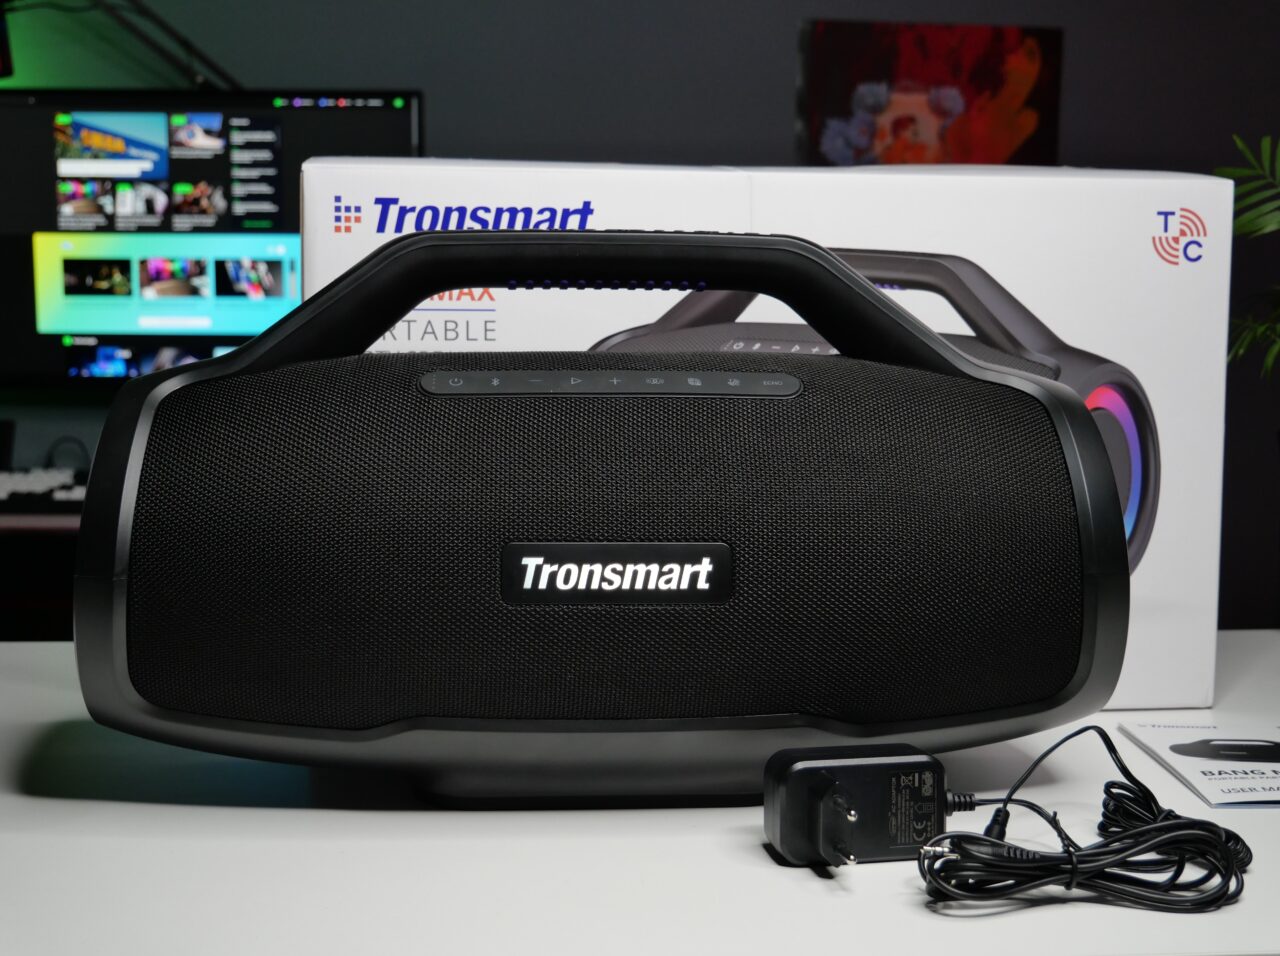 Przenośny głośnik Bluetooth marki Tronsmart na biurku, z tyłu kartonowe opakowanie, na pierwszym planie zasilacz i przewód.